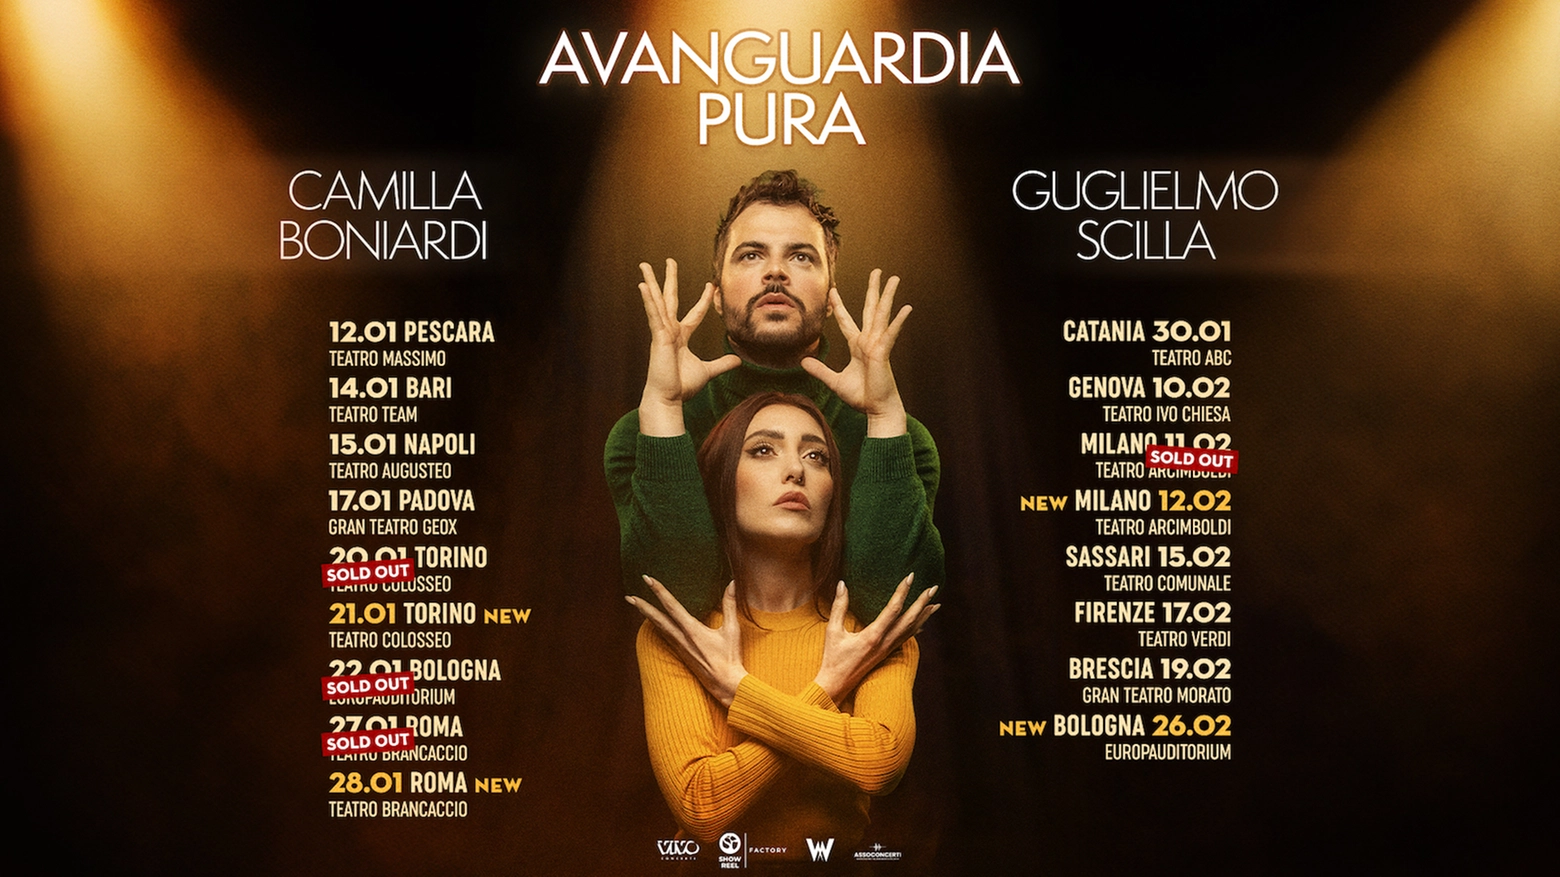 Guglielmo Scilla e Camihawke a teatro con 'Avanguardia pura'